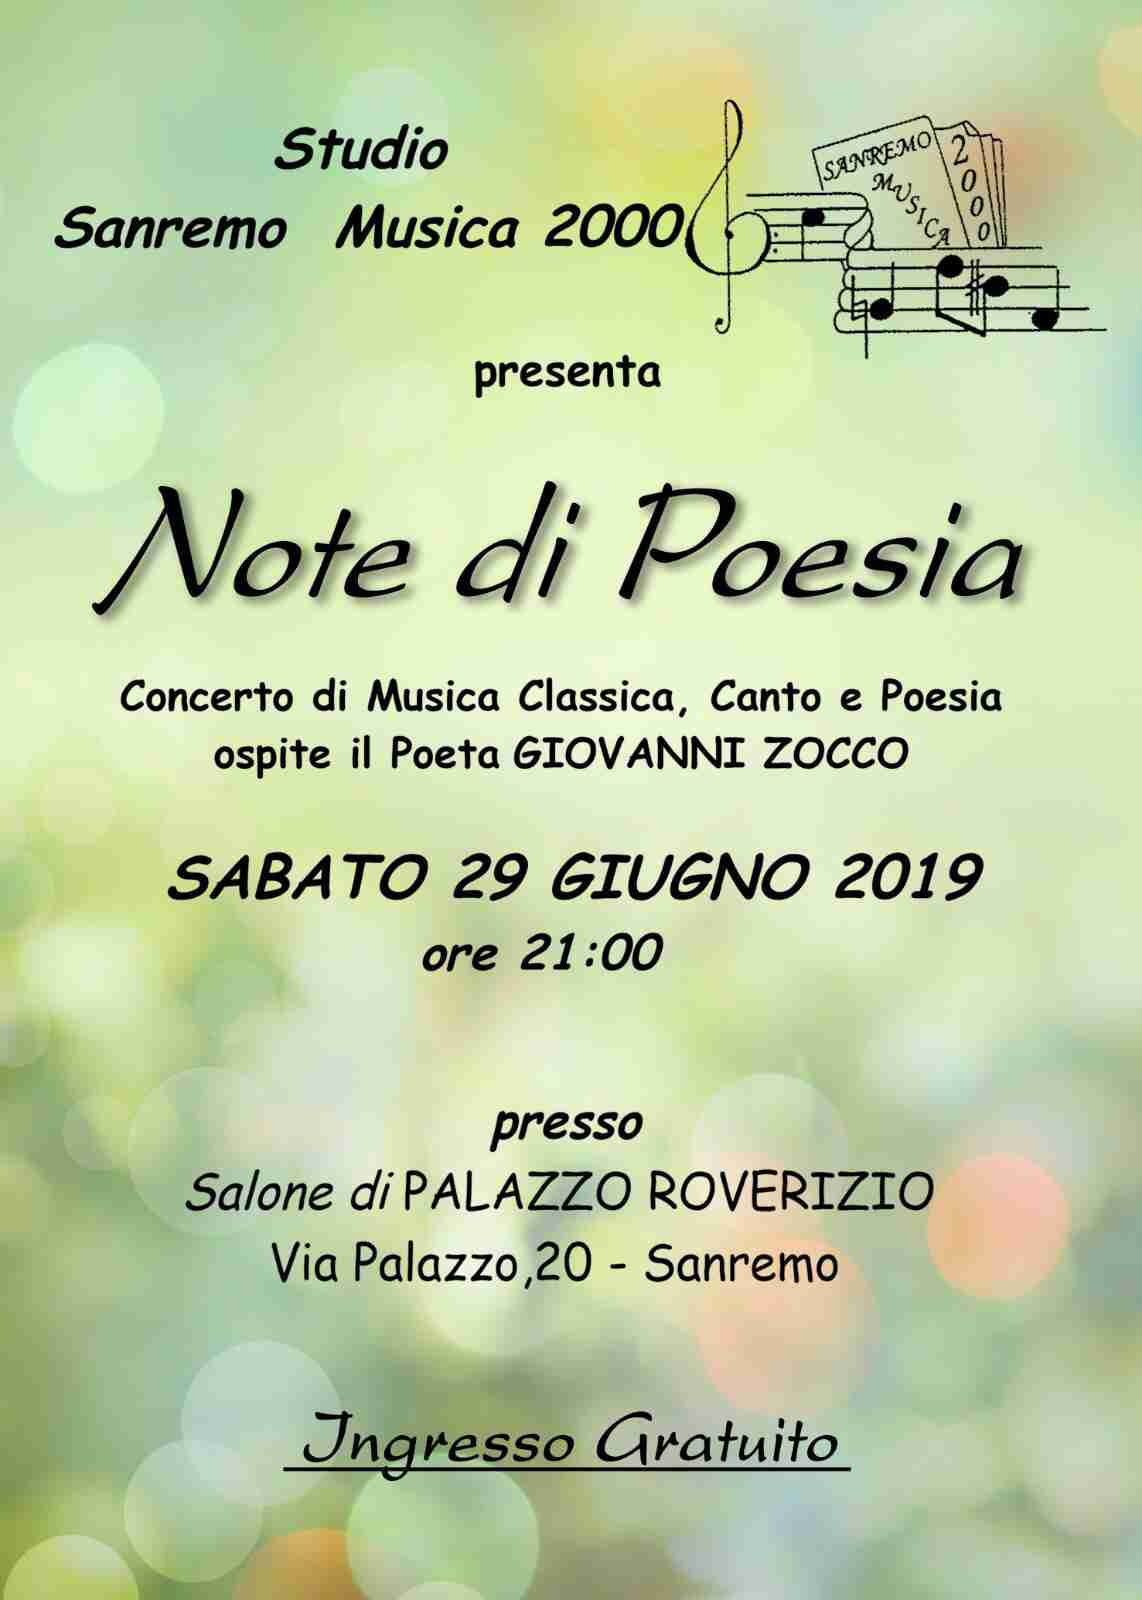 Il poeta rosolinese Giovanni Zocco ospite a Sanremo per l’evento “Note di Poesia”